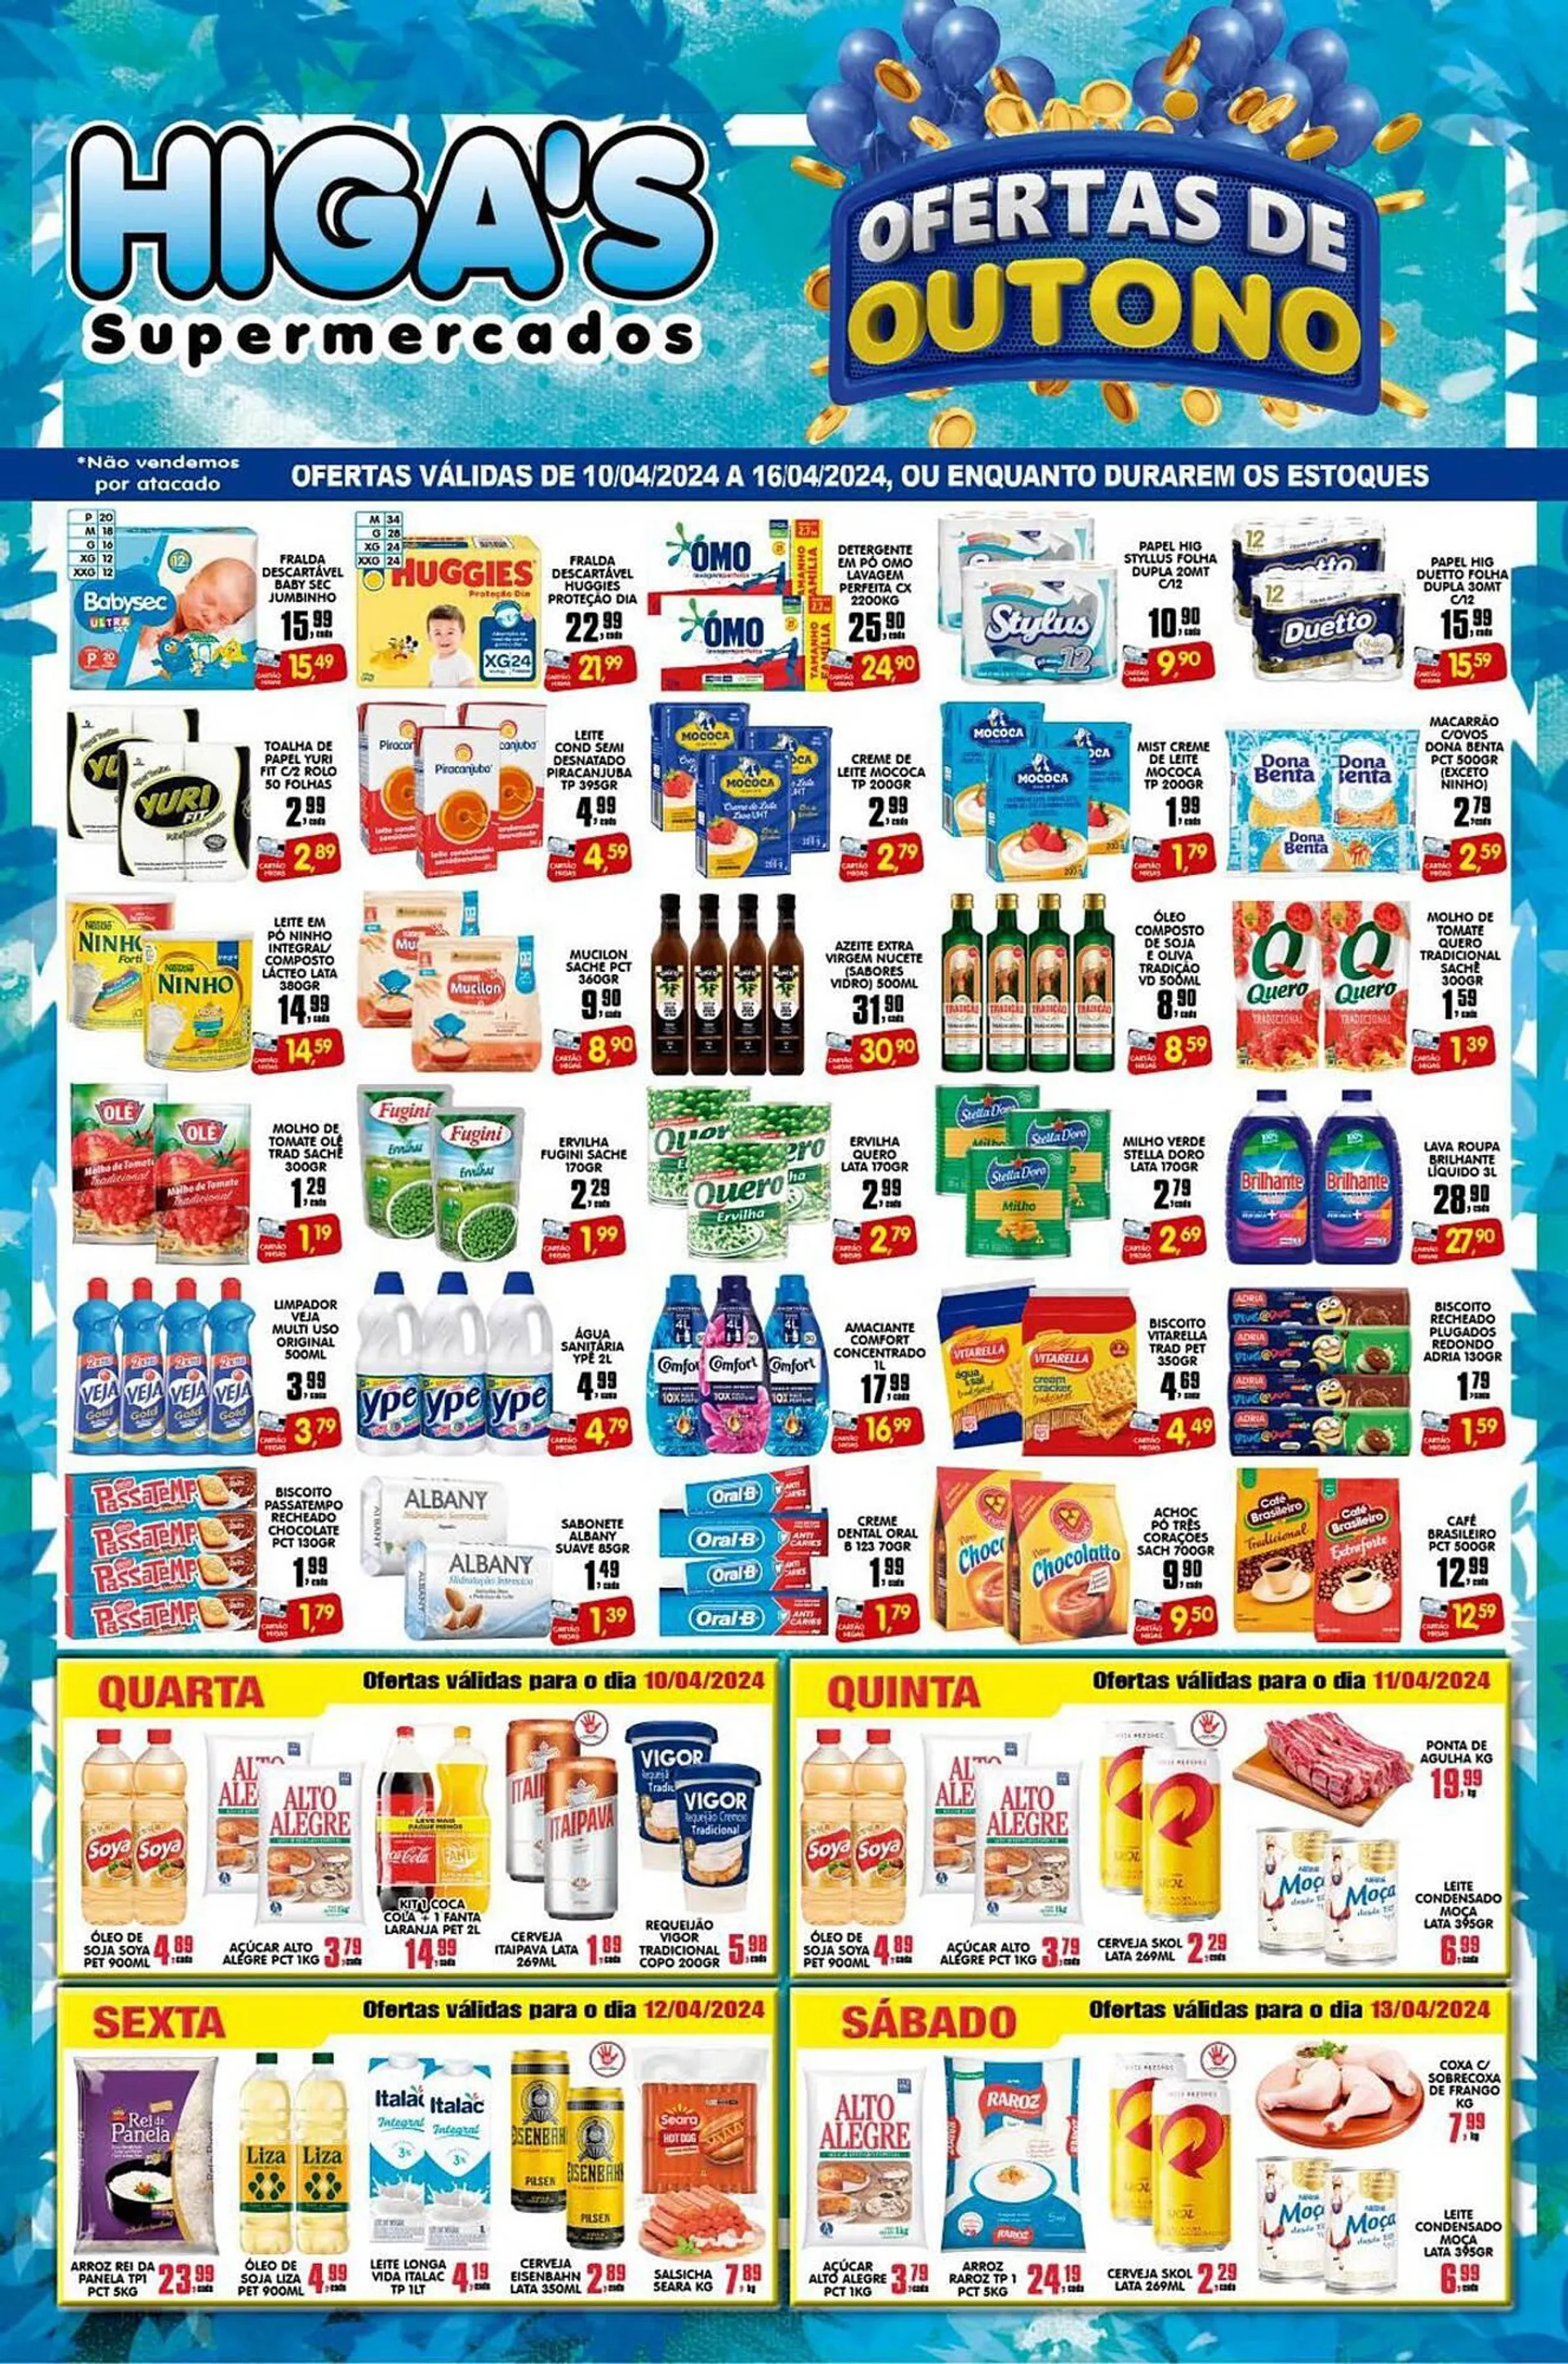 Encarte de Catálogo Higa's Supermercado 9 de abril até 16 de abril 2024 - Pagina 